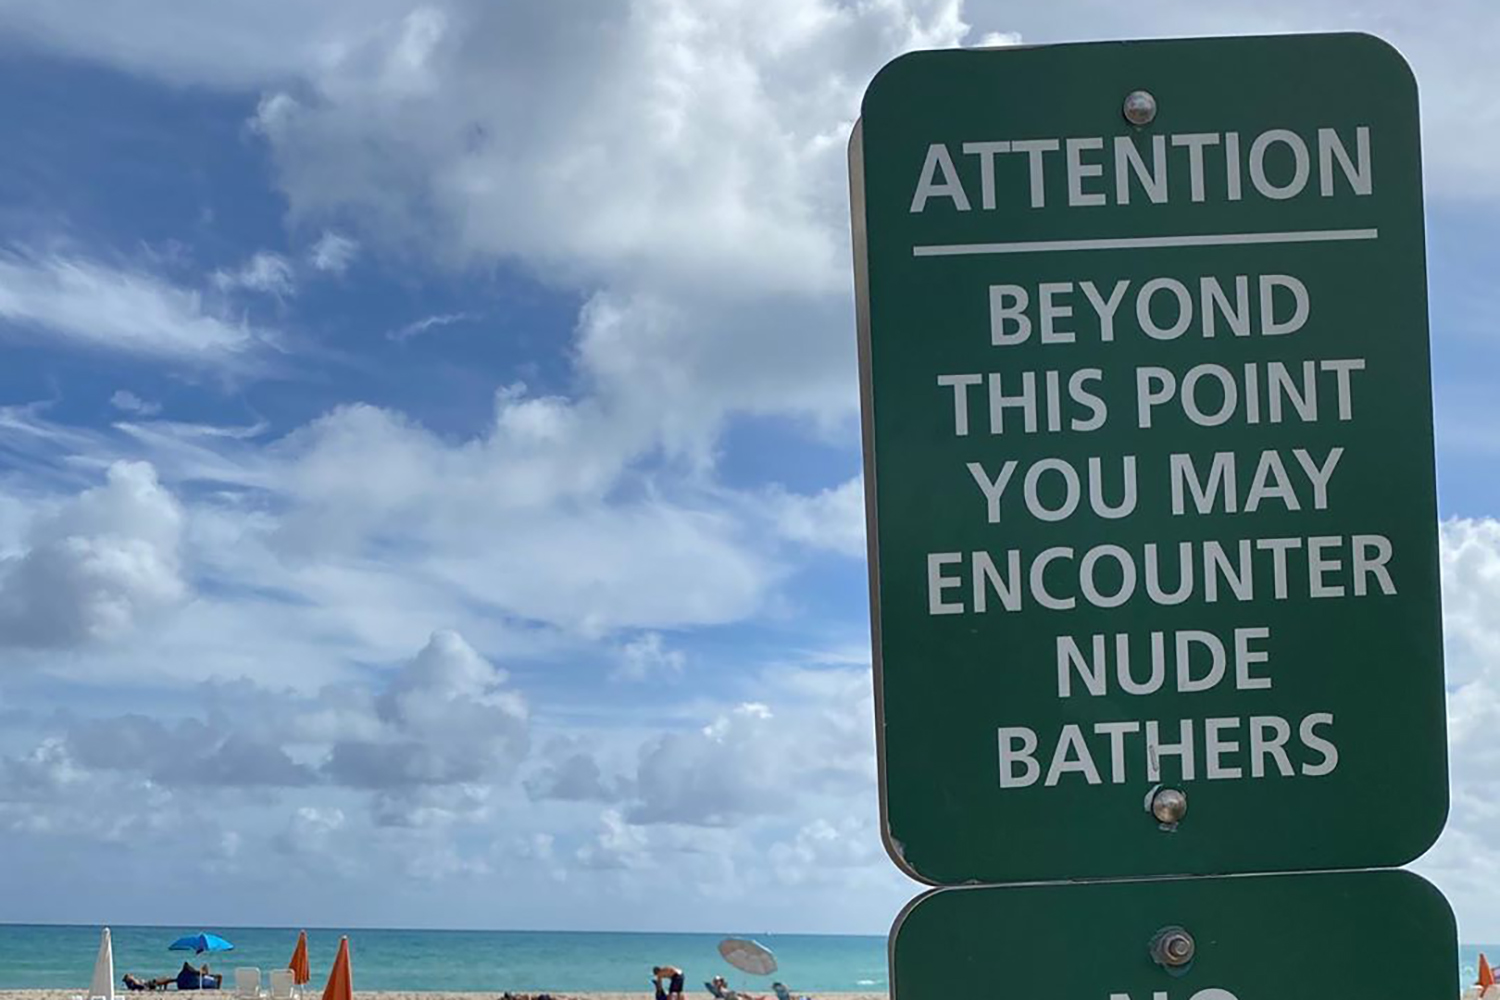 Retro Nudist Handjobs On The Beach - Florida Senate Committee Okays Legal Nudity at Nude Beaches - InsideHook